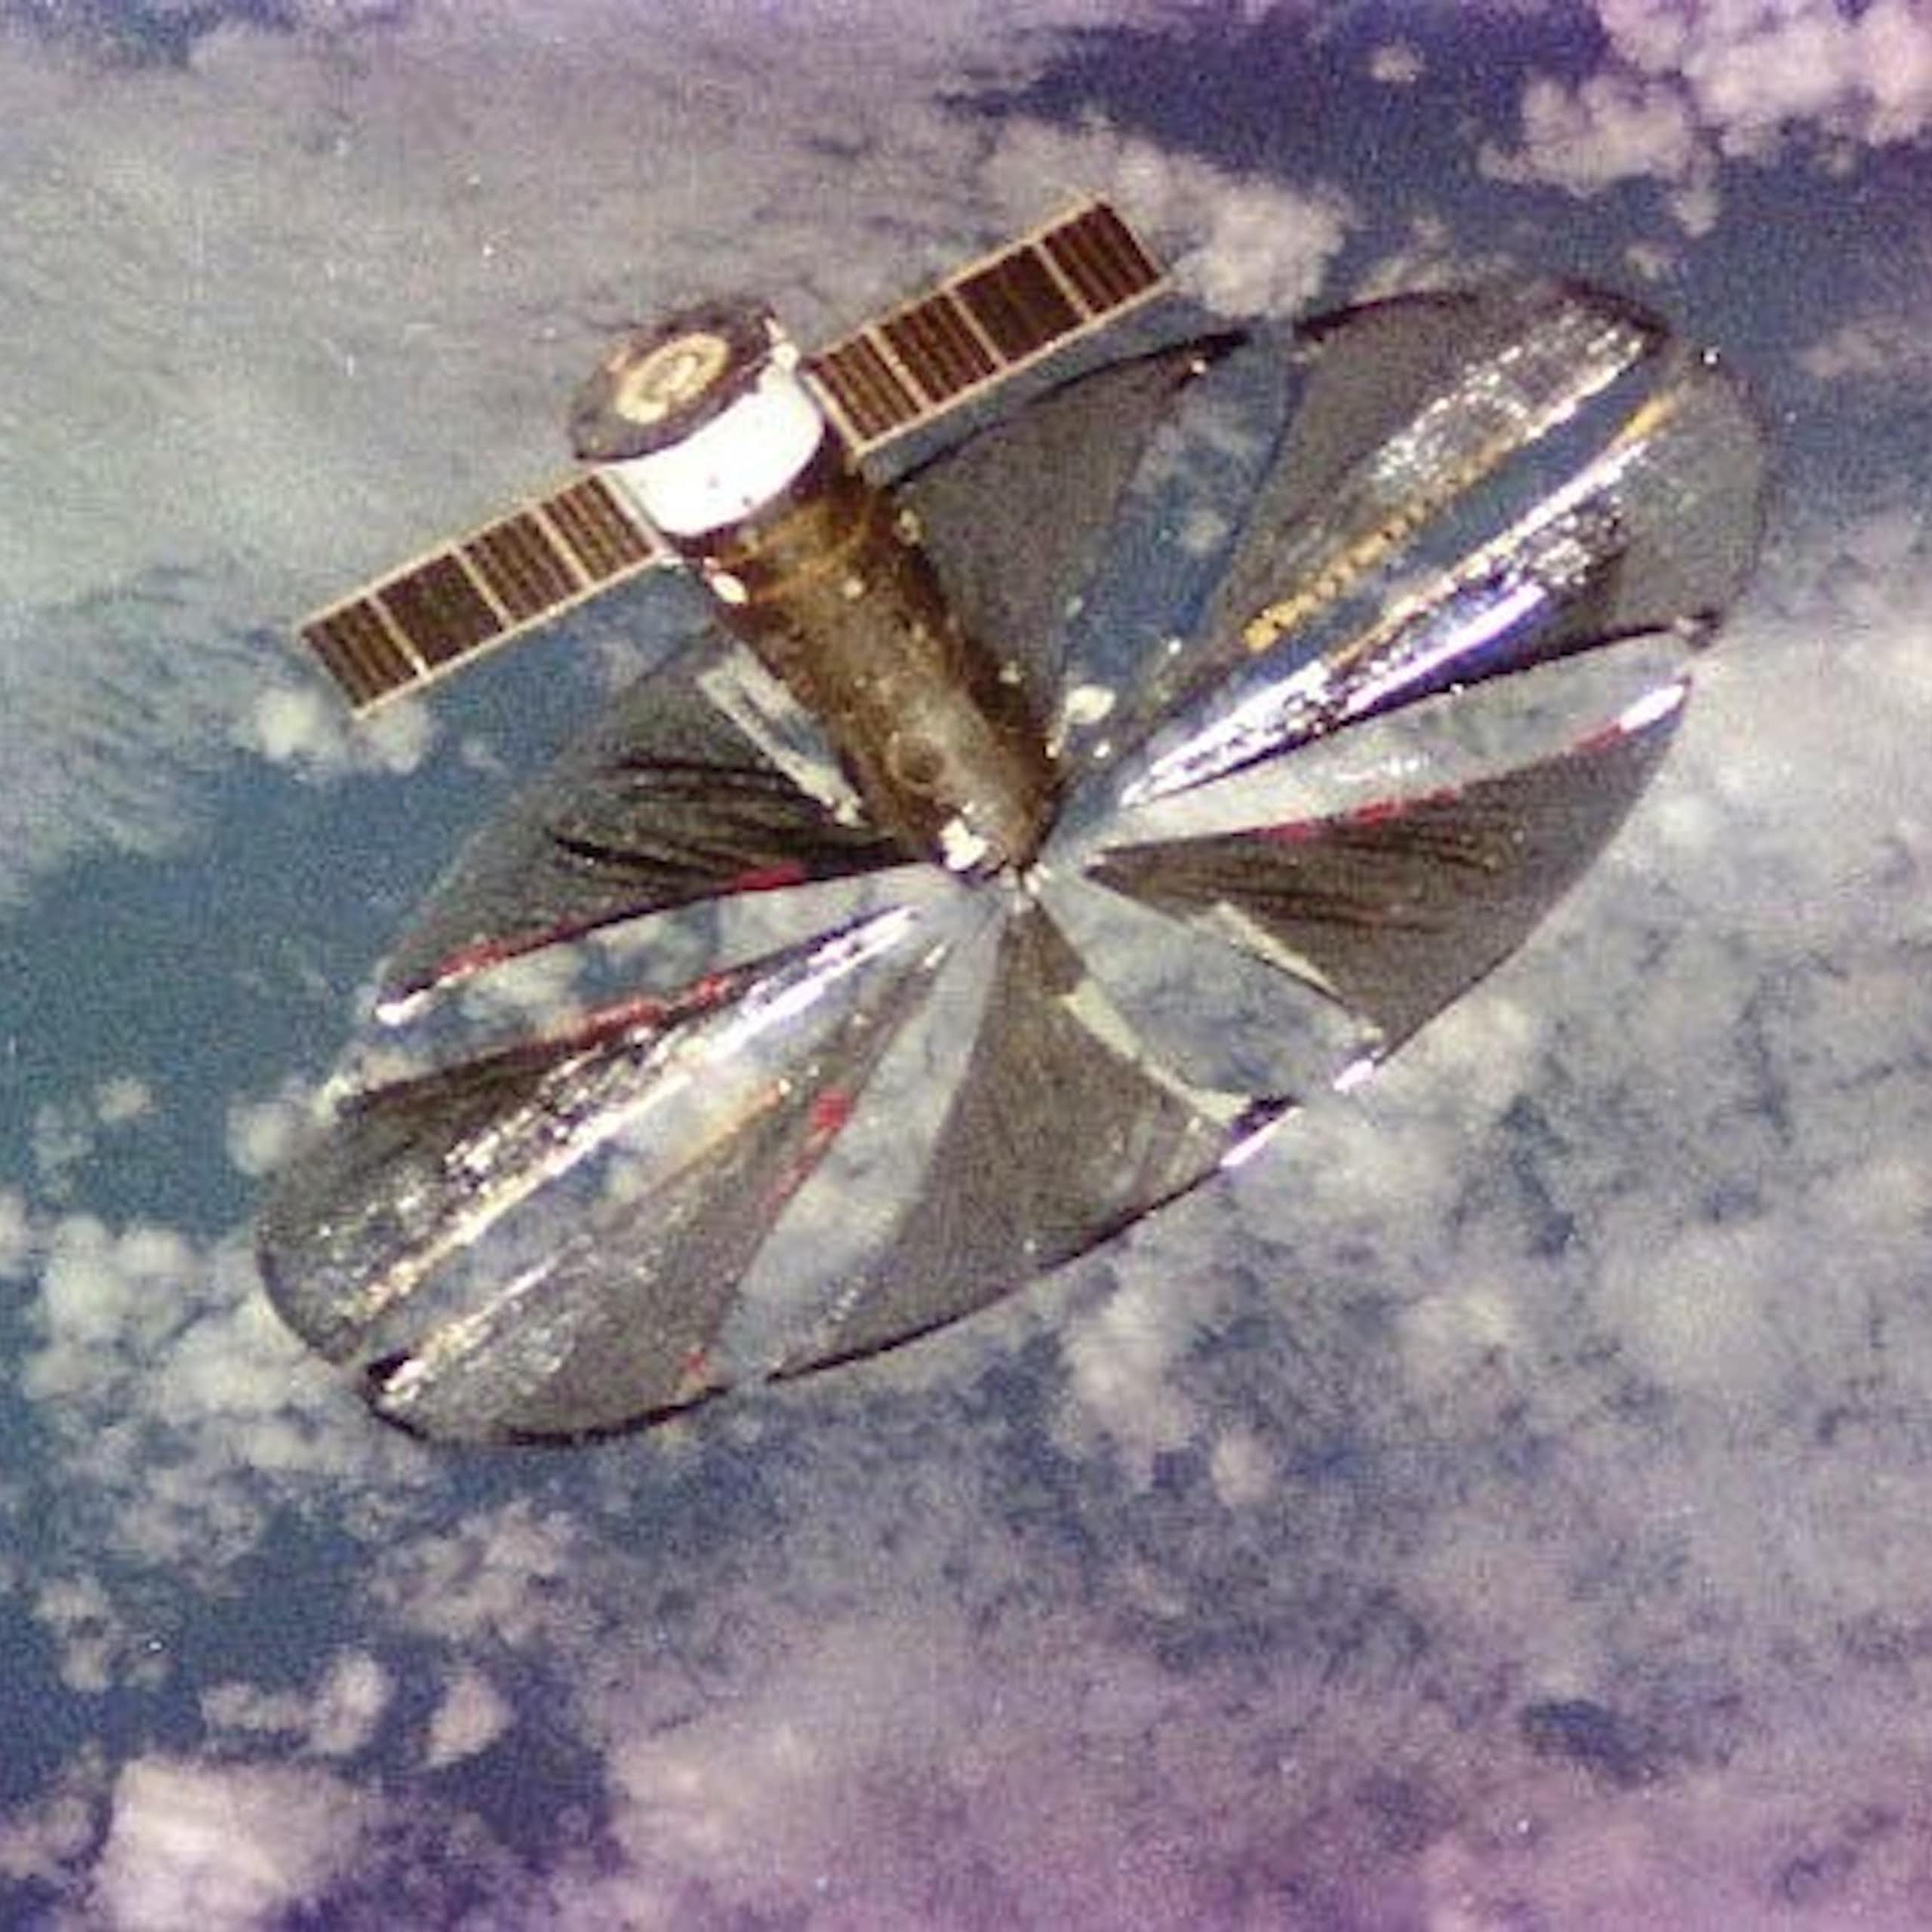 Vista espacial do refletor Znamia-2: um satélite com grandes velas que formam um disco prateado para refletir a luz solar